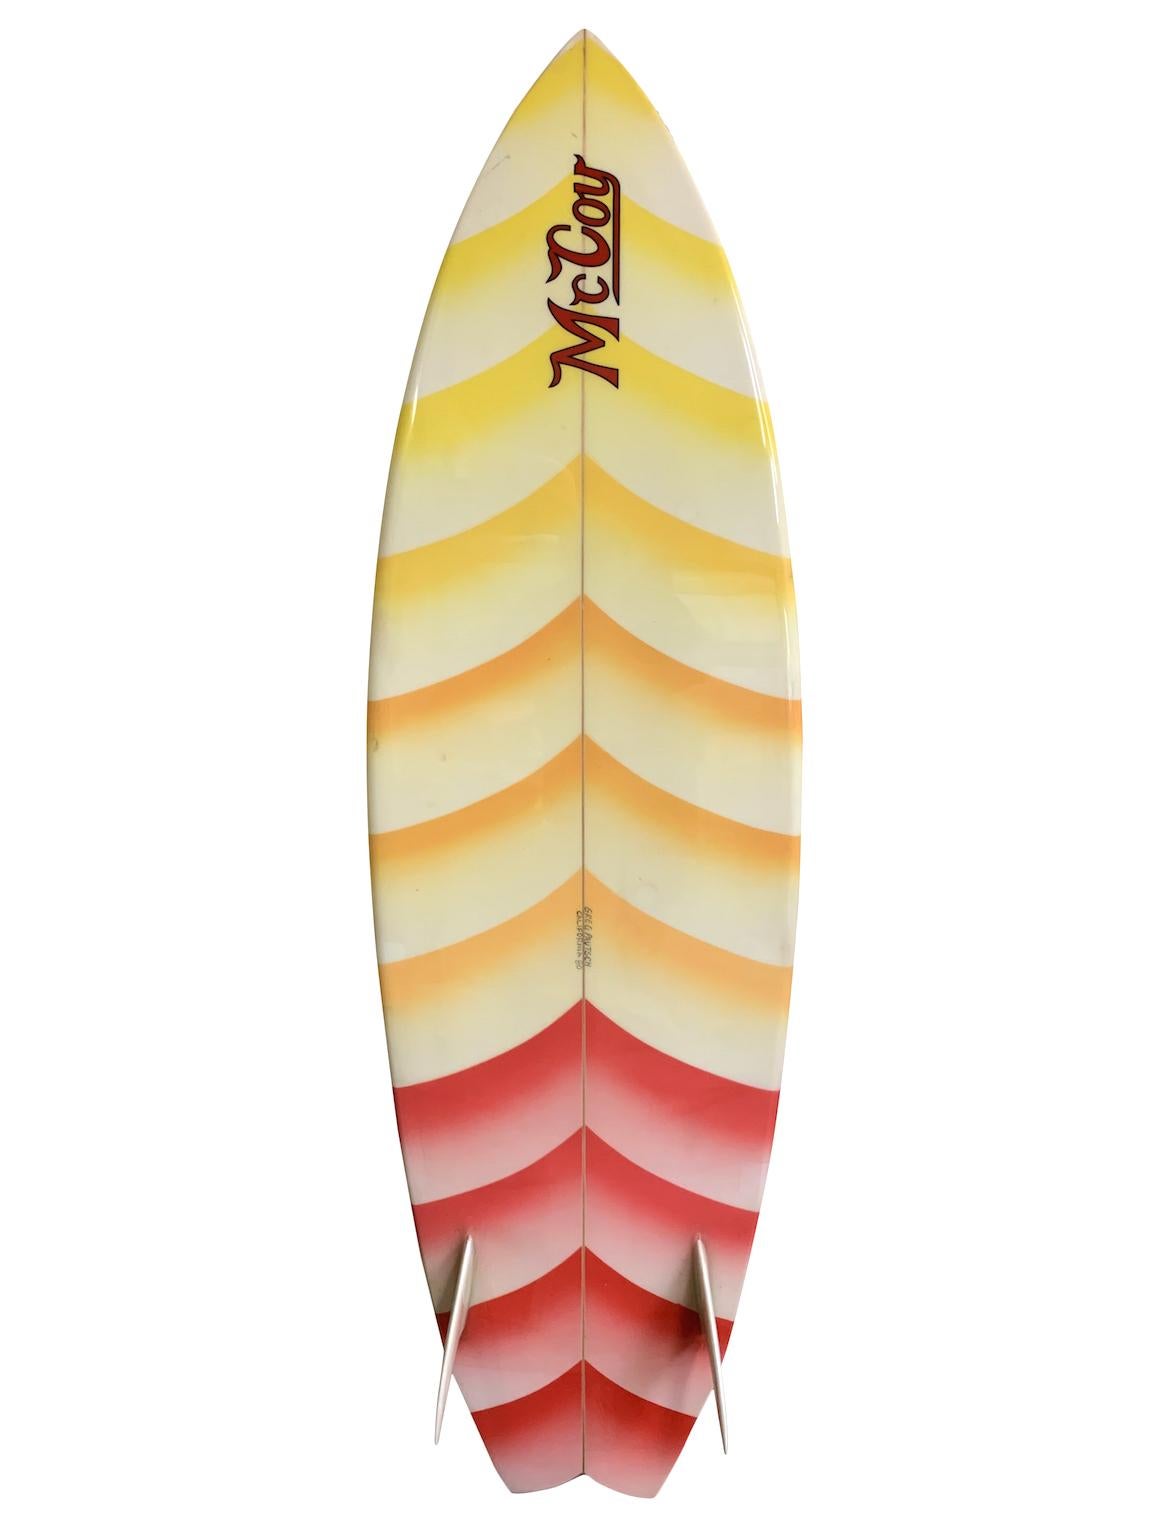 planche de surf McCoy 1980 twin fin shaped par Greg Pautsch. Avec un beau design en airbrush fade et des ailerons jumeaux en verre. Restauré dans son état d'origine par un expert en restauration de planches de surf ayant plus de 40 ans